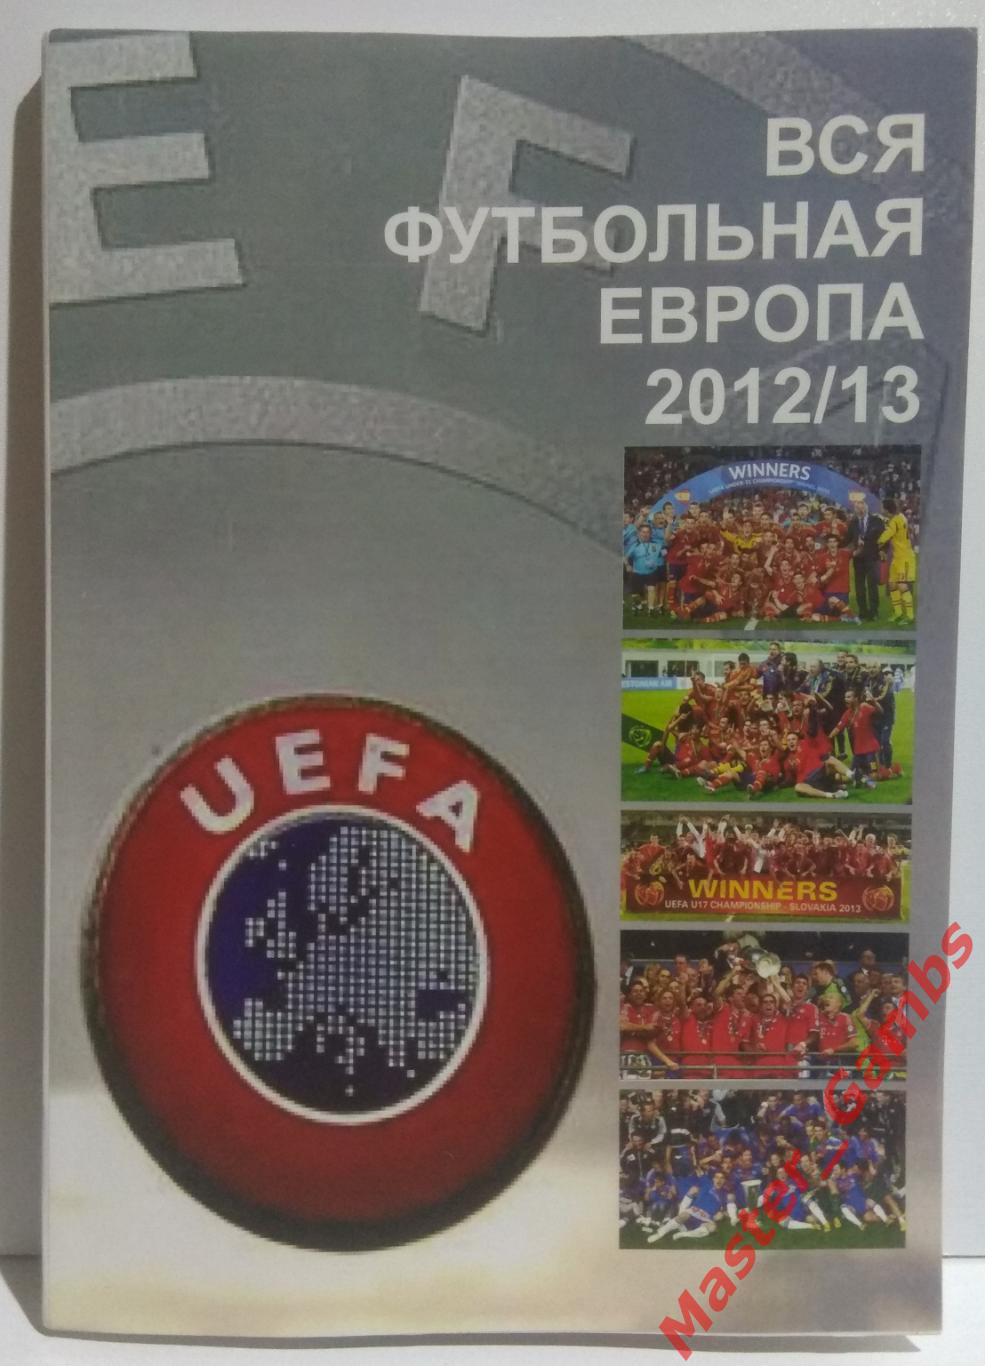 Ландер - Футбол в Украине #22 / Вся футбольная Европа #3 2012/2013* 1